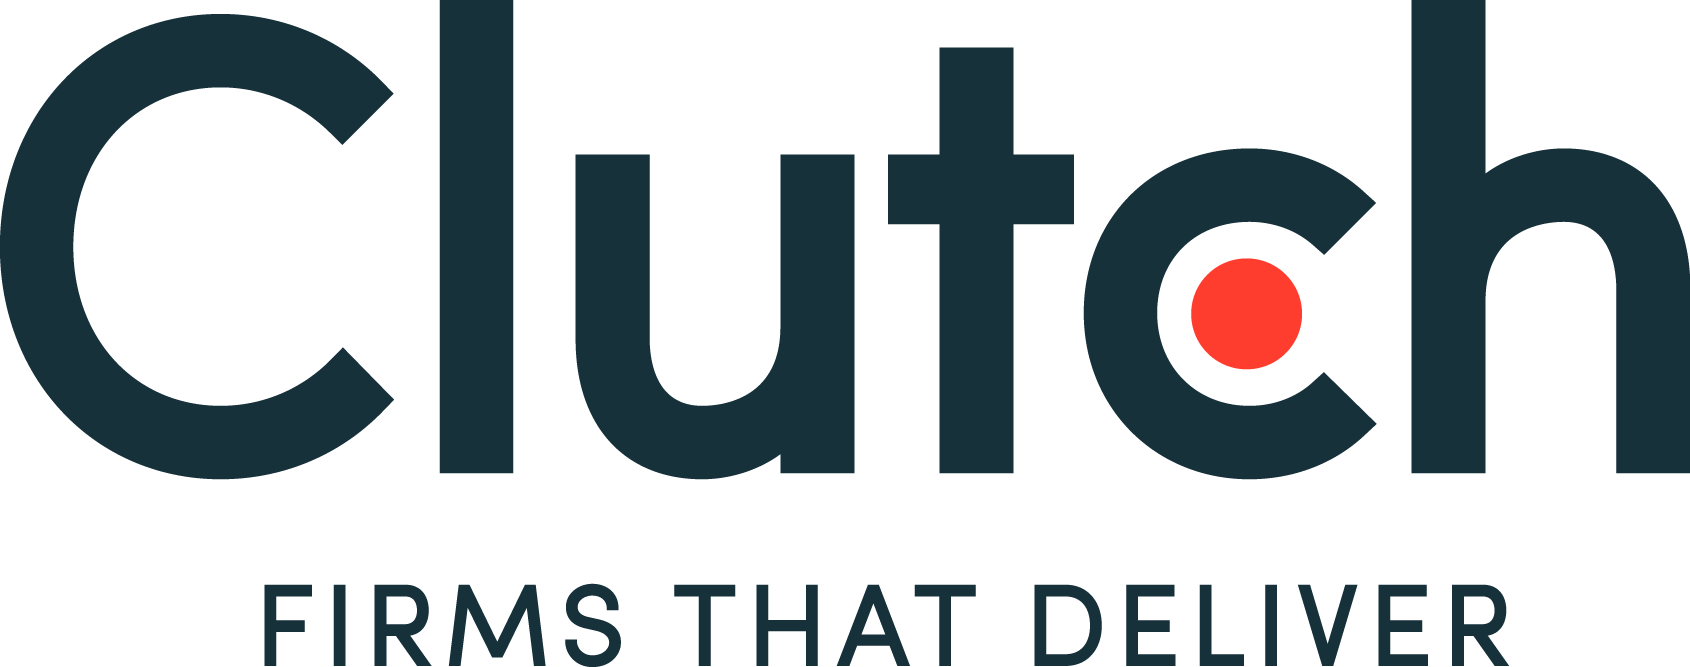 New Clutch Tagline logo